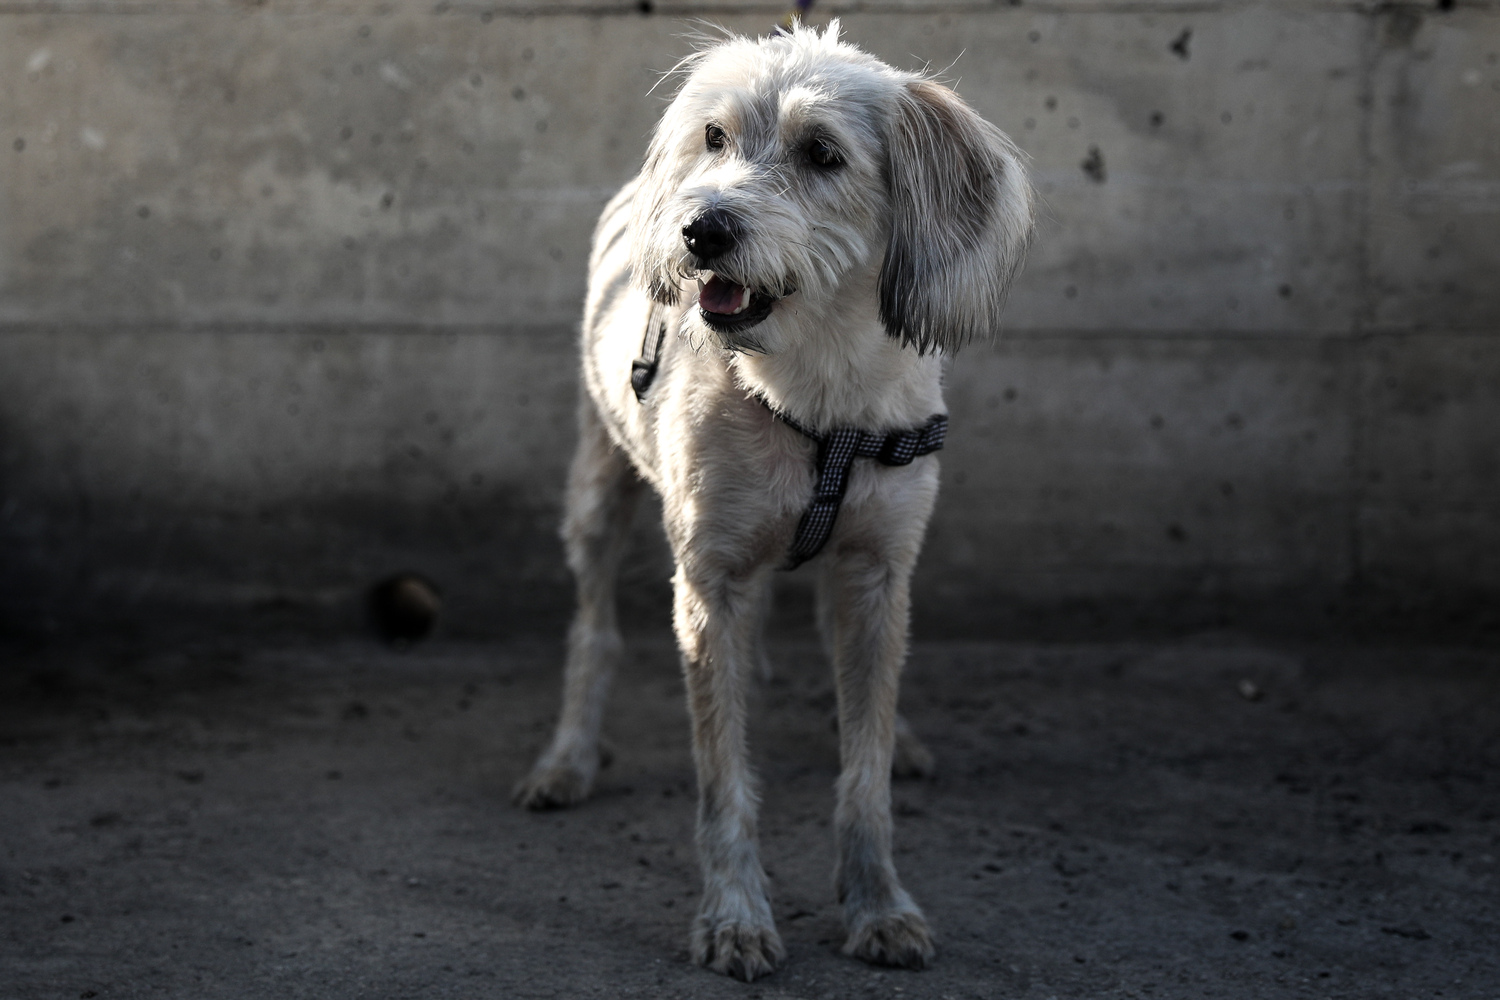 Ηράκλειο: Πέθανε λίγο αφότου το βρήκαν σε άθλιες συνθήκες μαζί με τρία ακόμα σκυλιά – Συνελήφθησαν οι ιδιοκτήτες